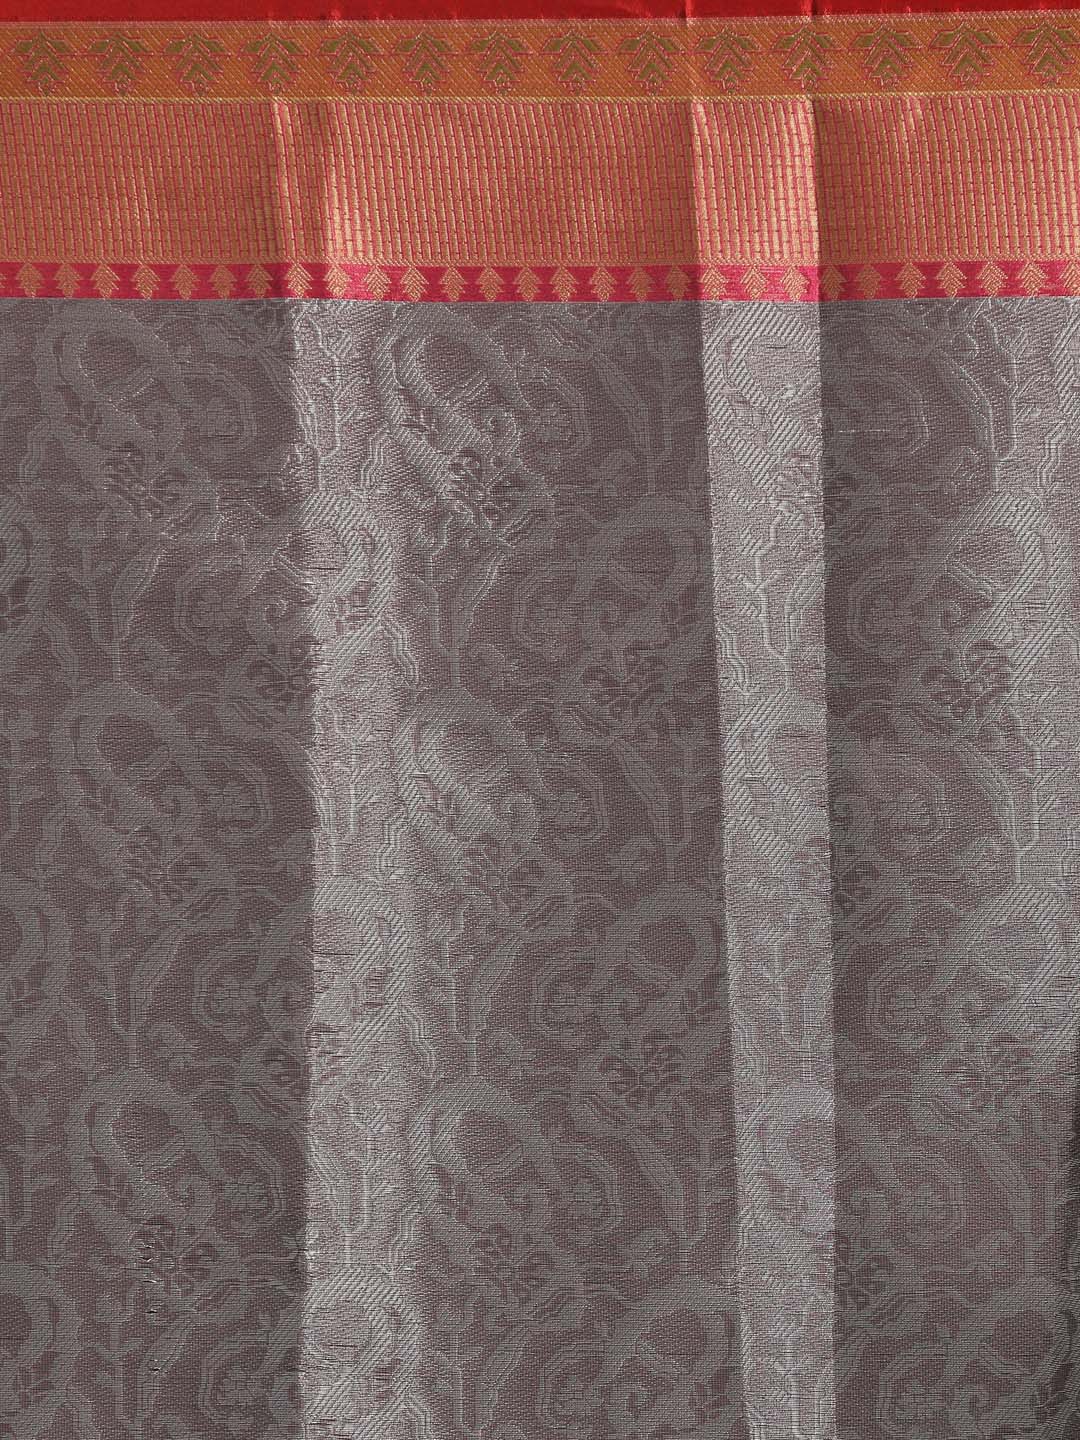 Indethnic Banarasi Grey Woven Design Party Wear Saree - Saree Detail View